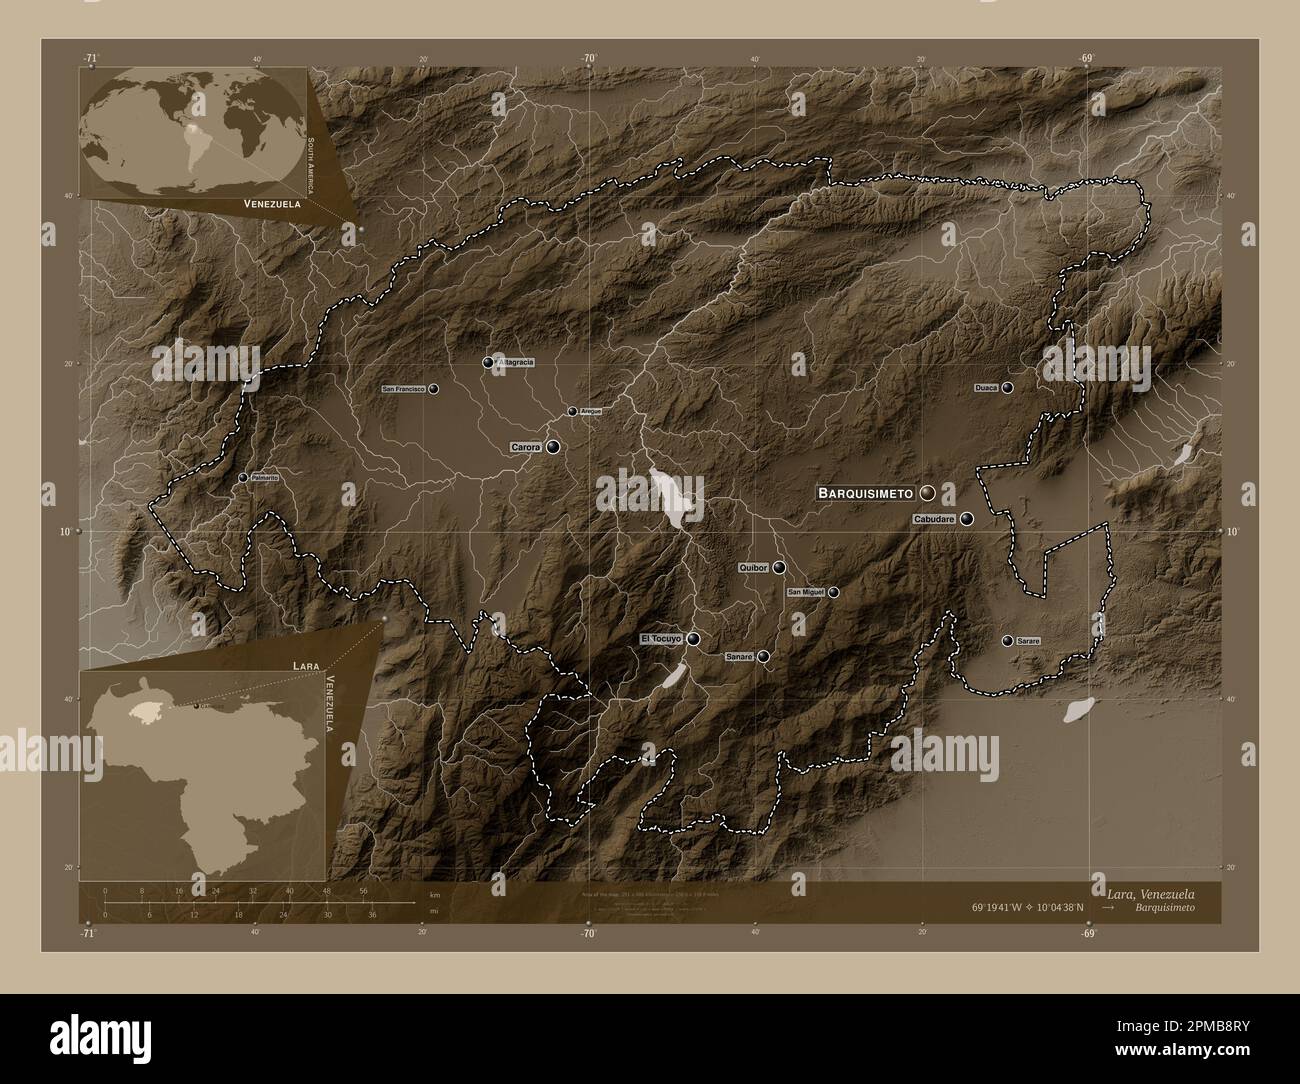 Lara, Staat Venezuela. Höhenplan in Sepia-Tönen mit Seen und Flüssen. Standorte und Namen der wichtigsten Städte der Region. Ecke autokorr Stockfoto